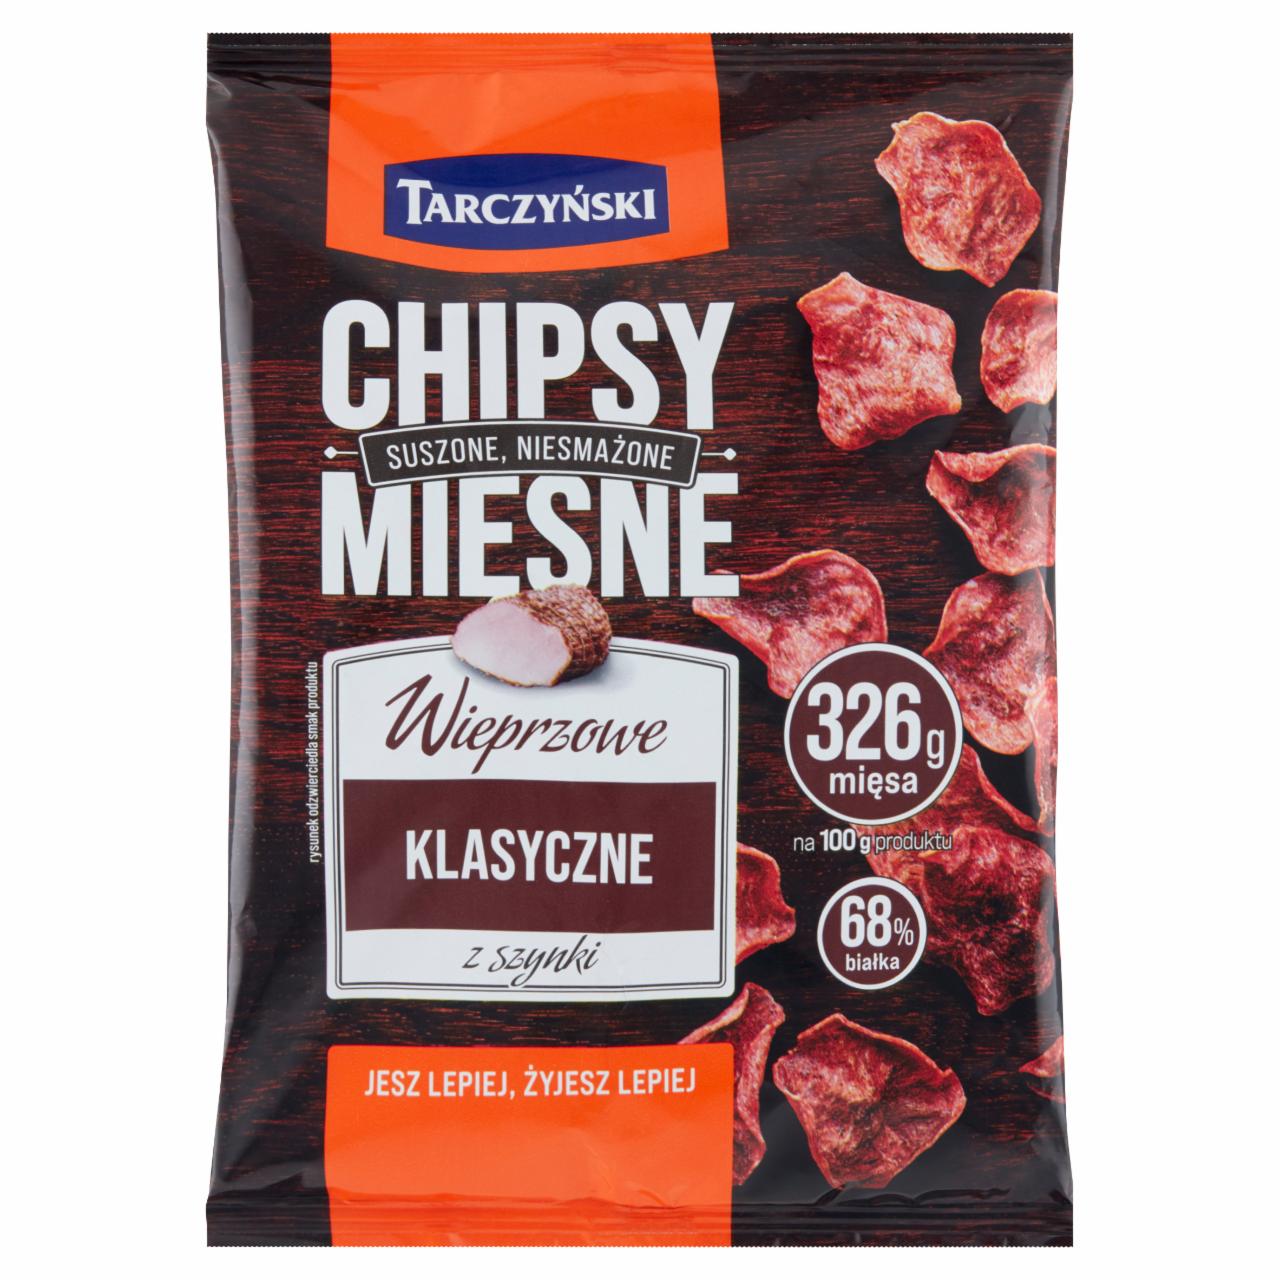 Zdjęcia - Tarczyński Chipsy mięsne wieprzowe klasyczne z szynki 25 g